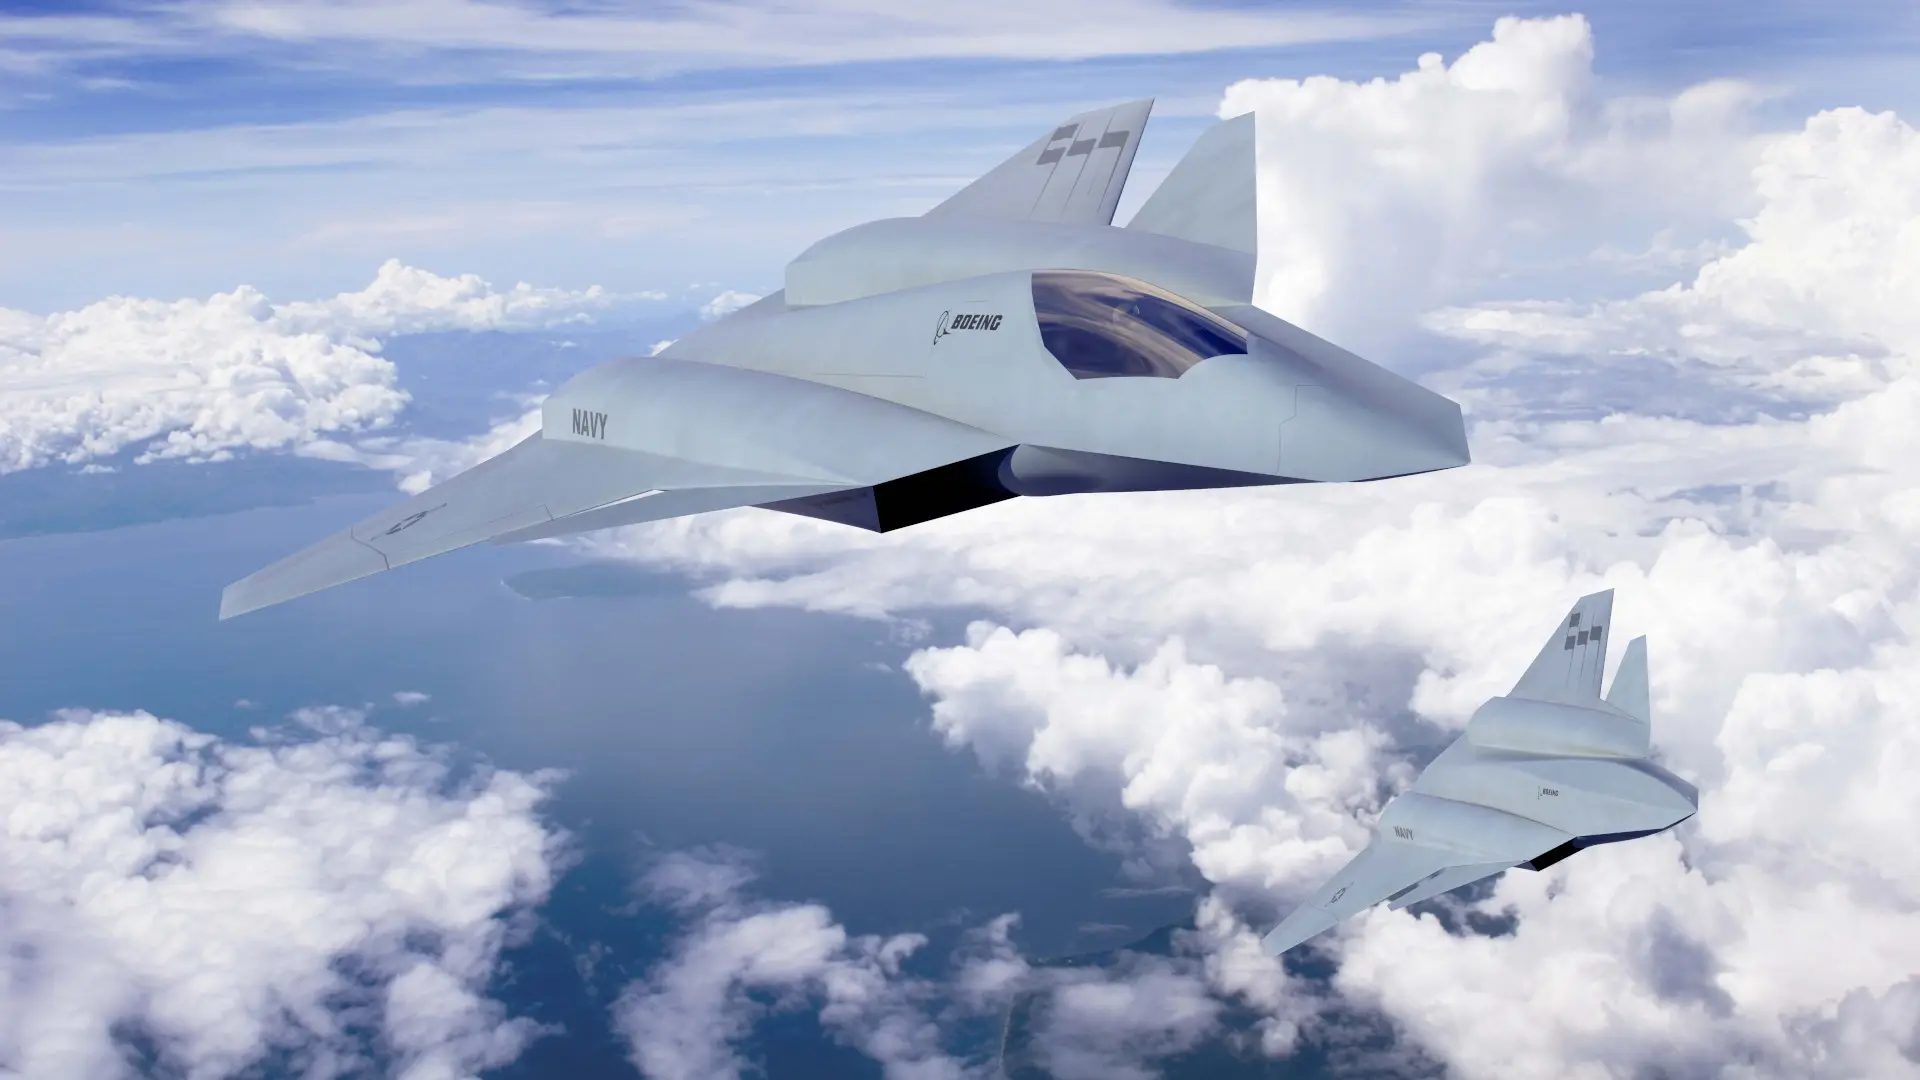 La marine américaine demande 1,528 milliard de dollars pour développer l'avion de combat secret de sixième génération F/A-XX destiné à remplacer le F/A-18E Super Hornet